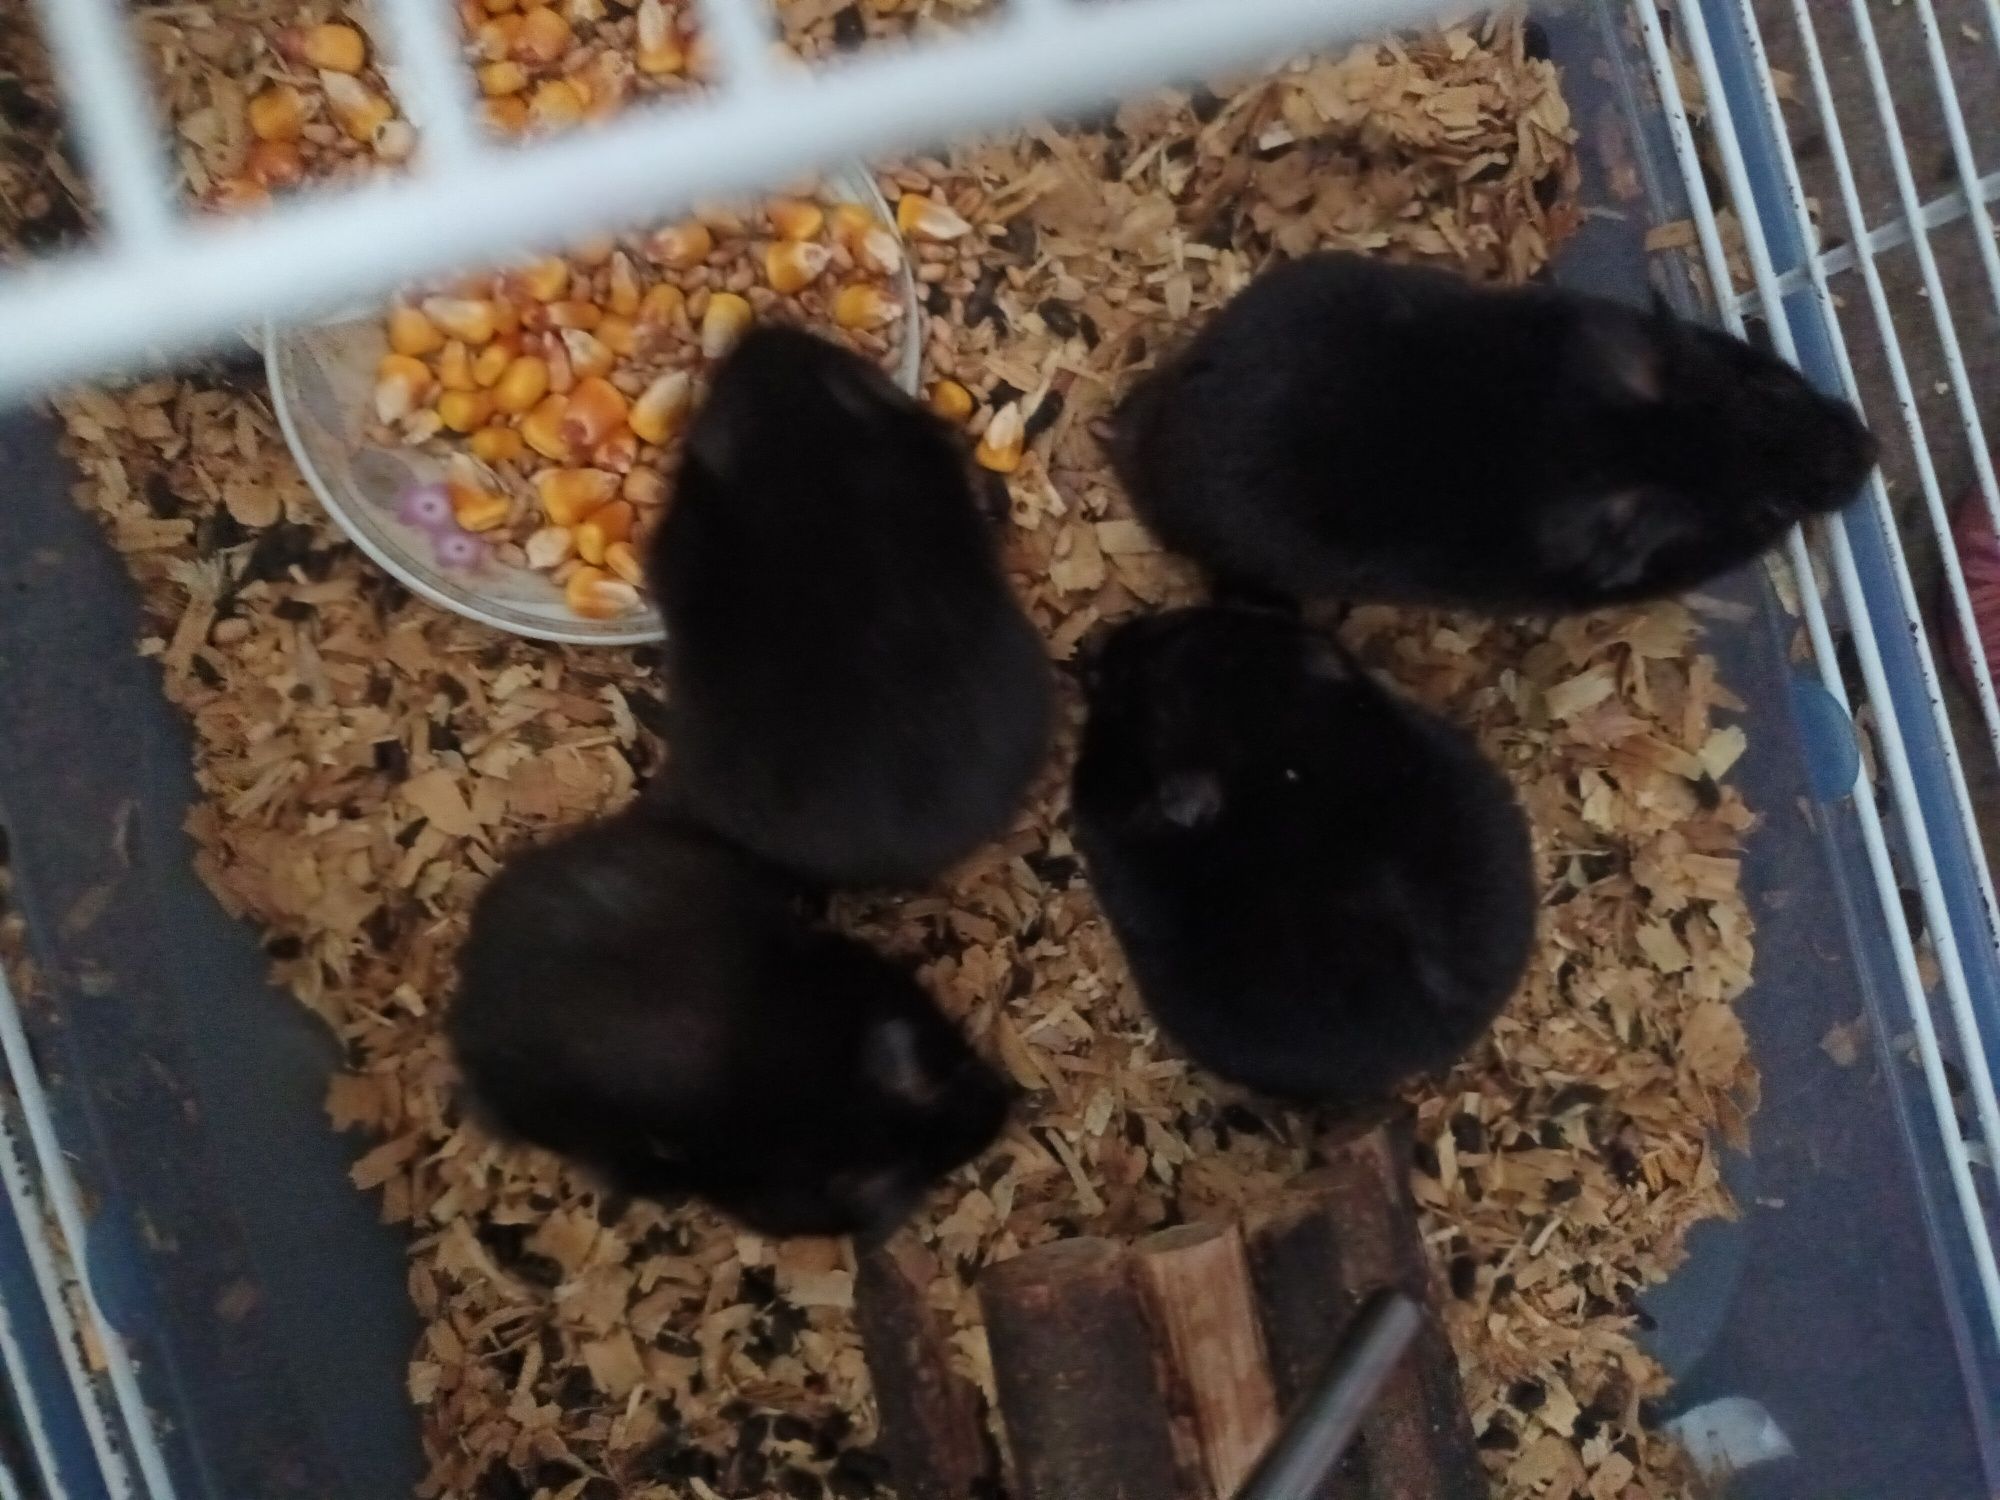 Hamsteri adulți  9 bucăți